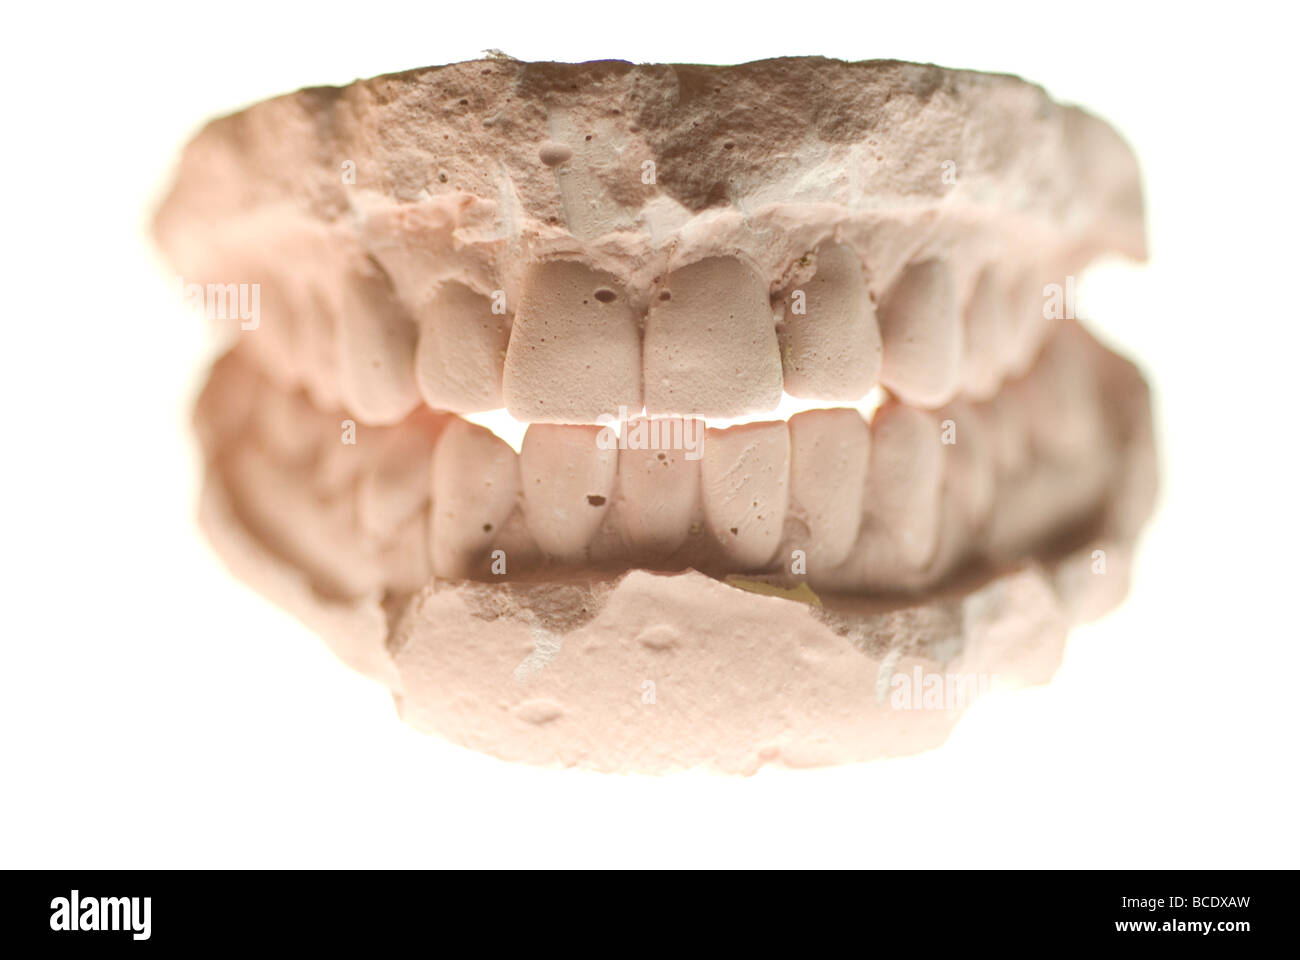 dental cast plaster model Stock Photo